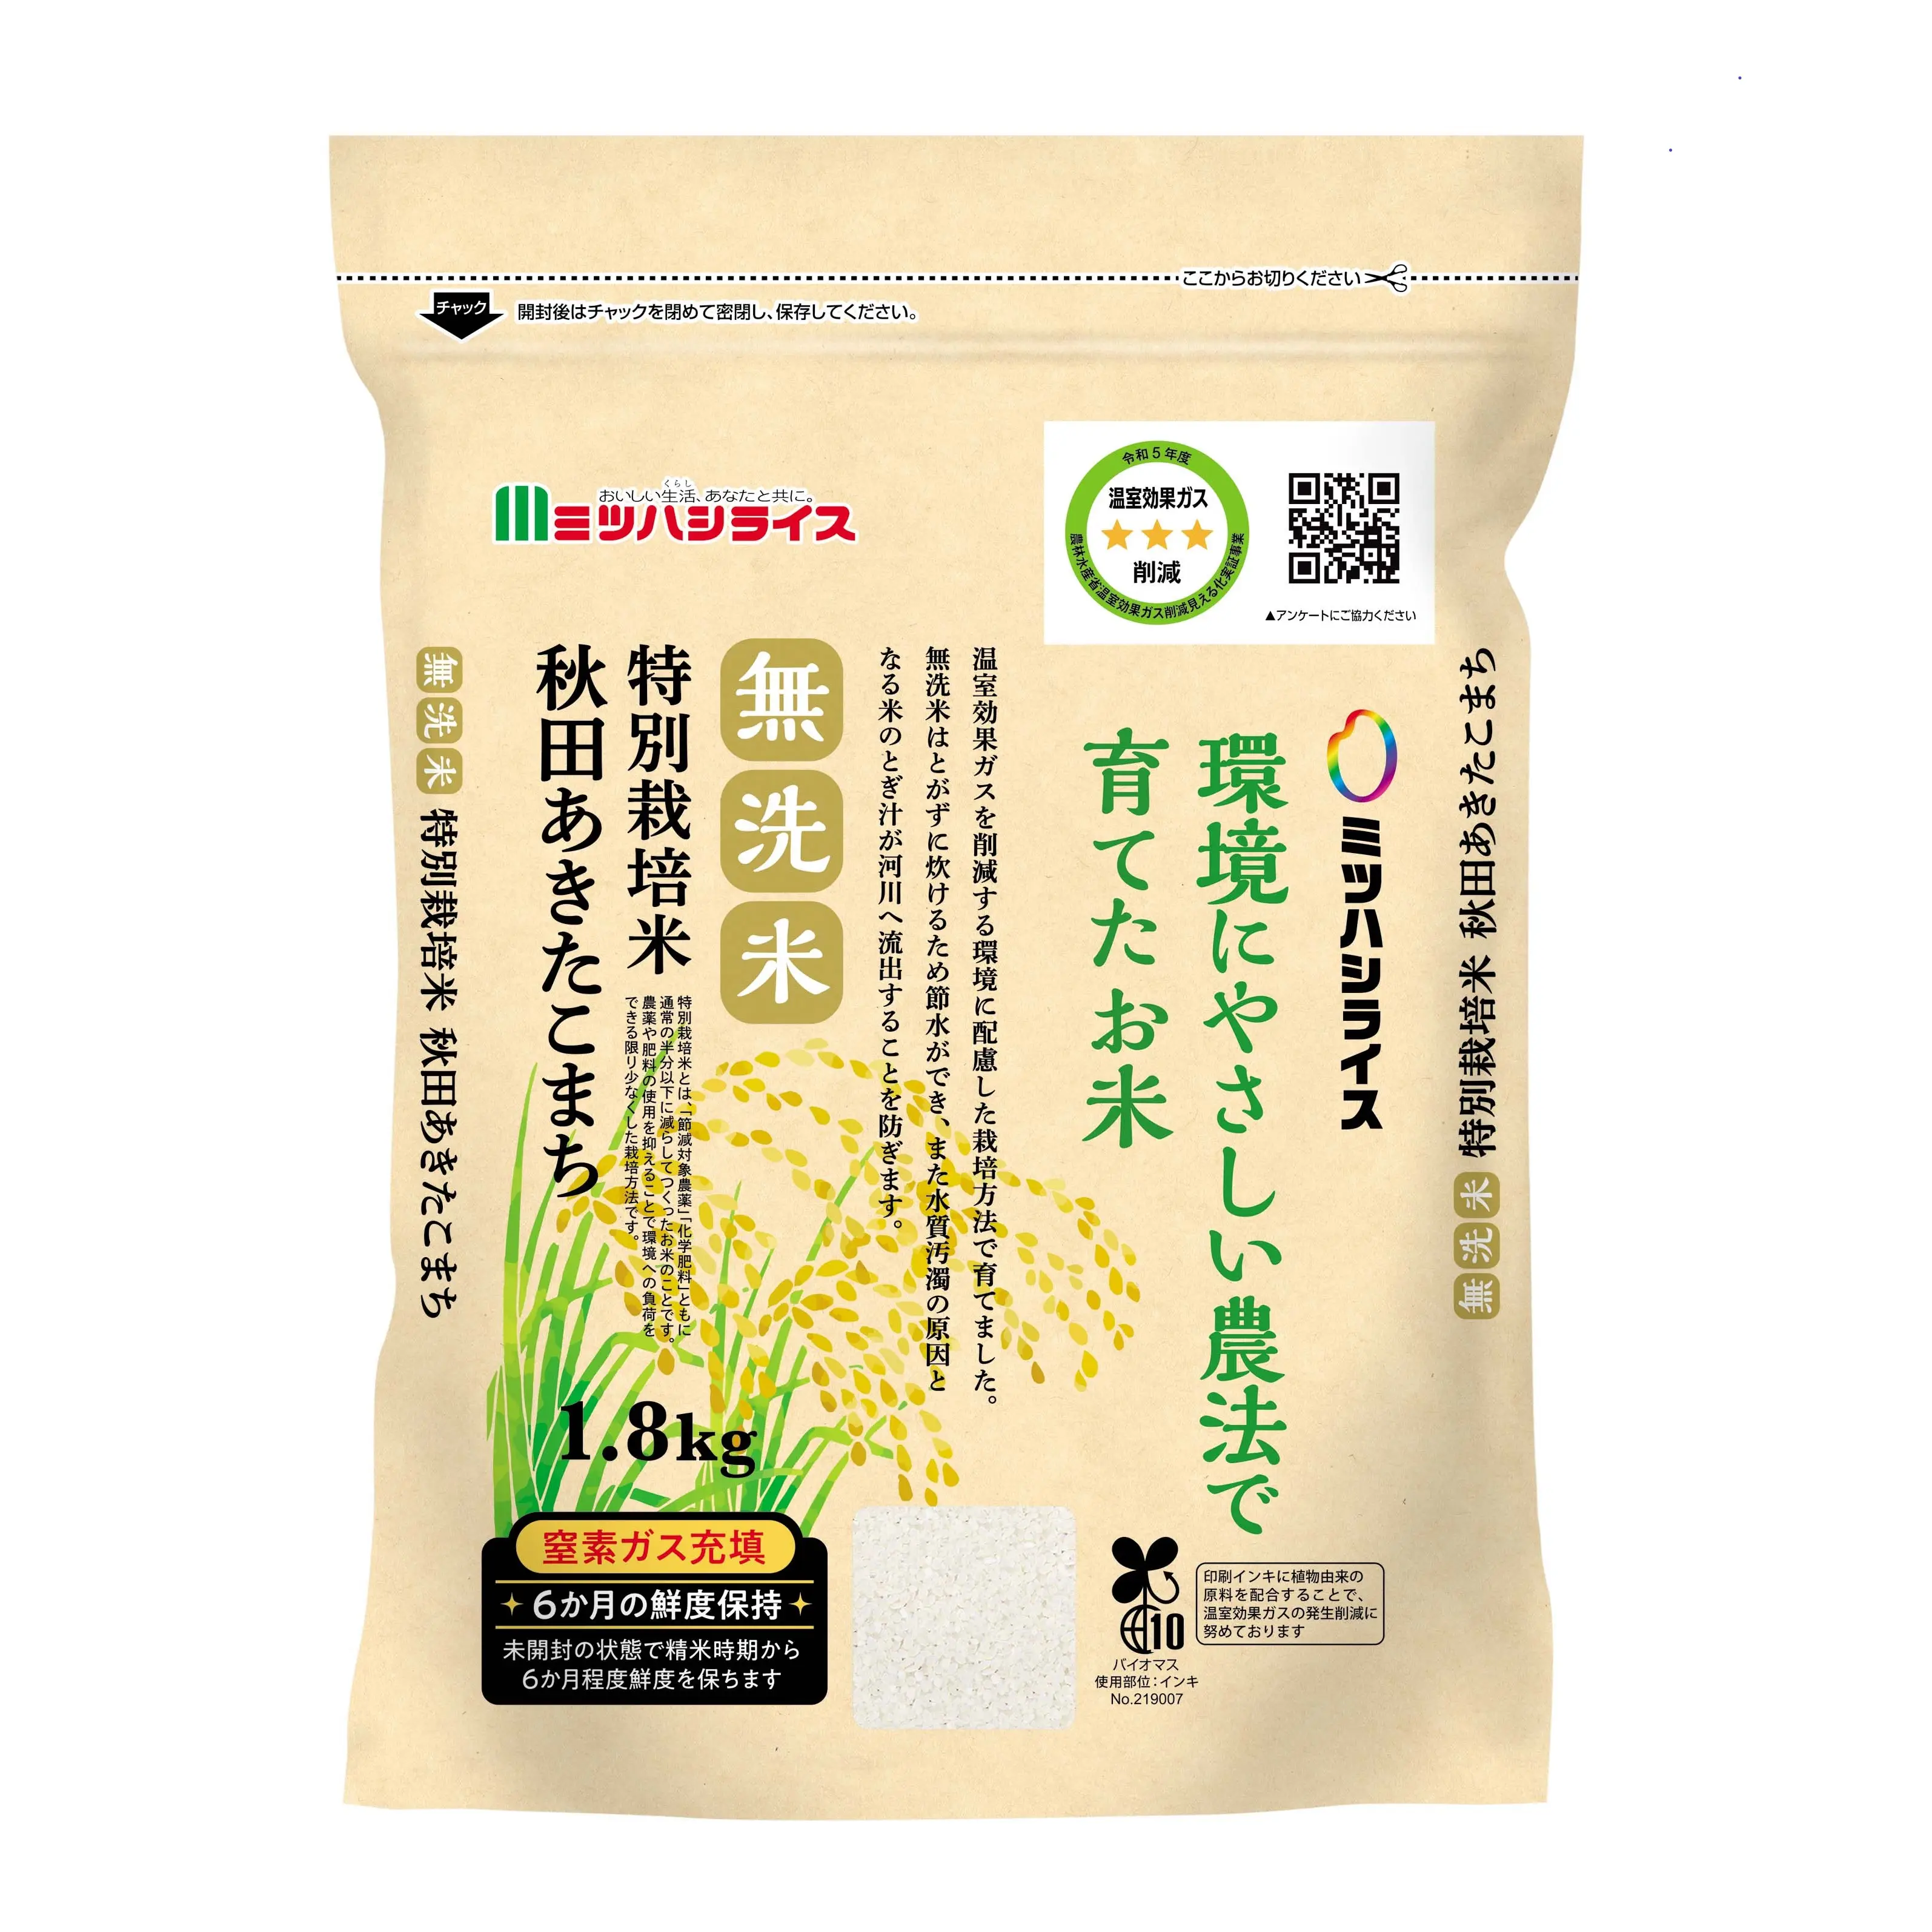 أرز طويل مستدير طبيعي ياباني عالي الجودة غير قابل للغسل من المورِّد